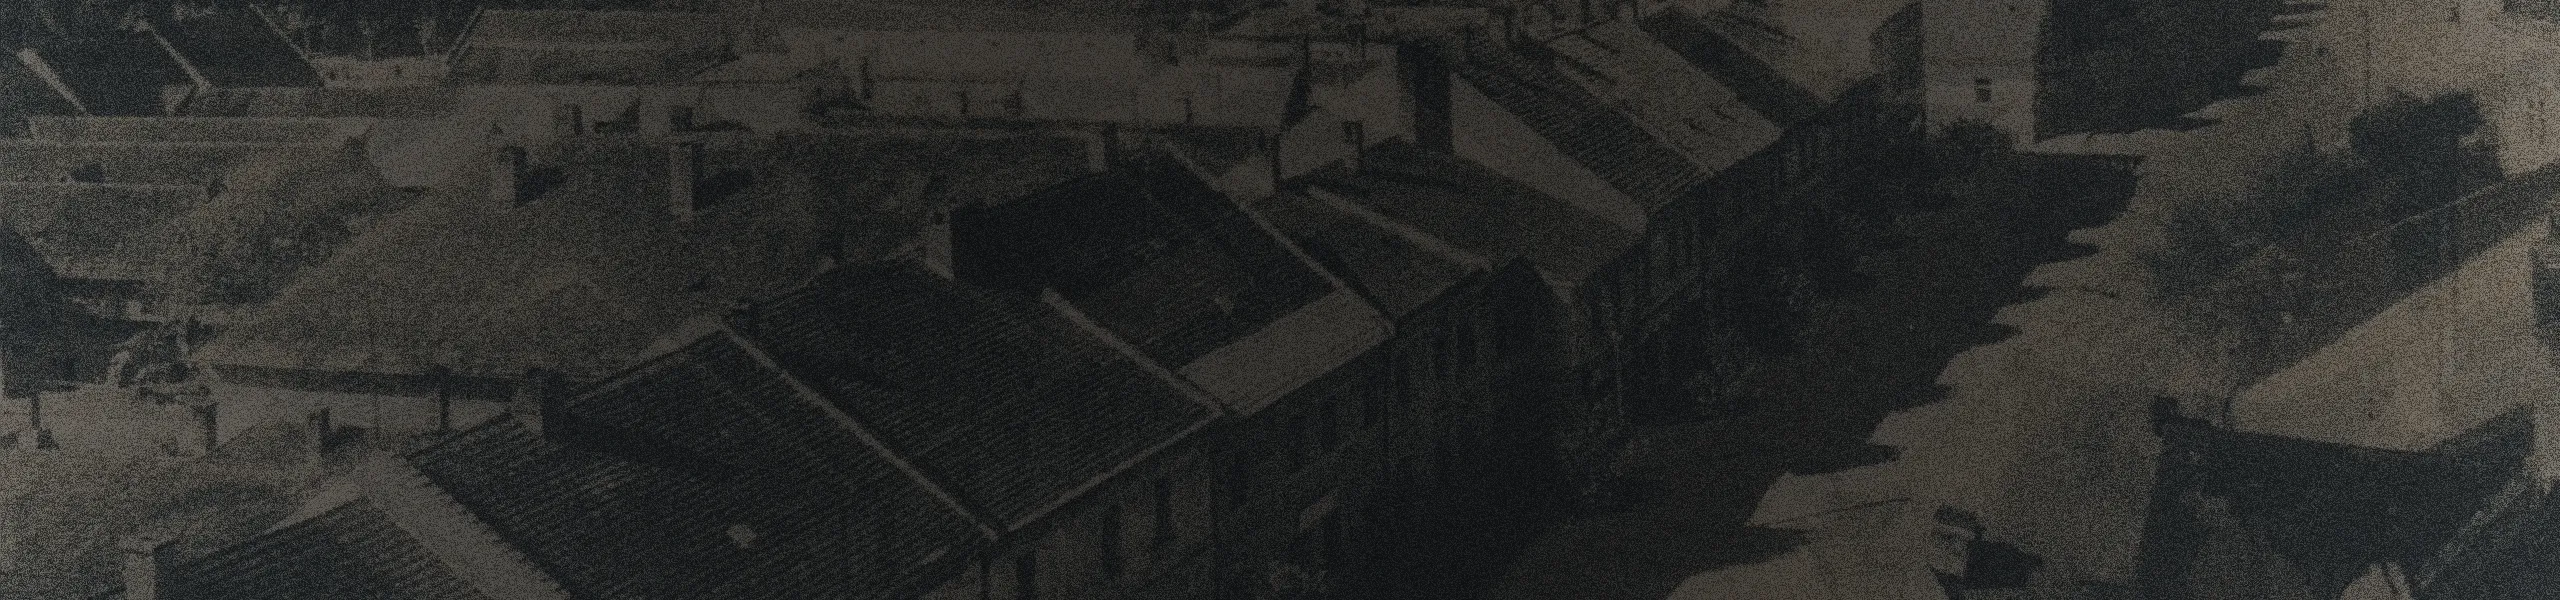 Úvodný obrázok historická fotografia spišského mesta.